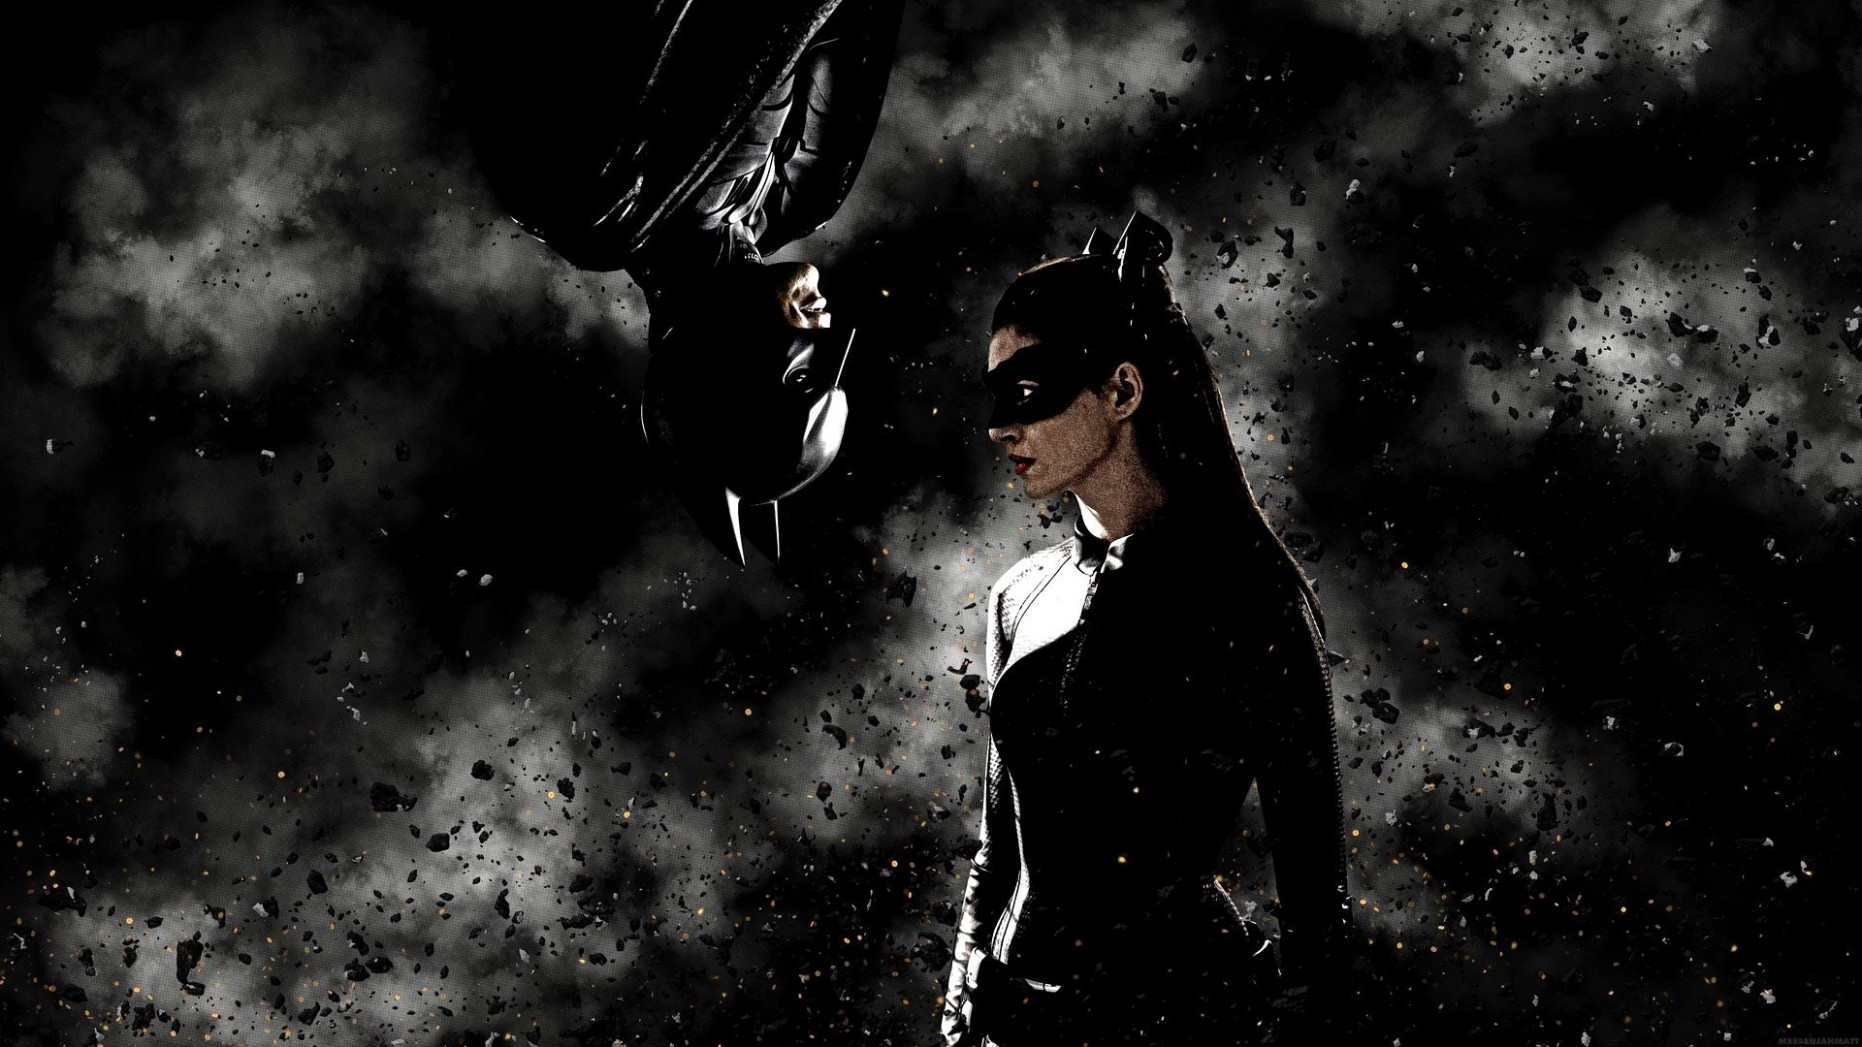 Batman Begins Wallpaper Hd - Batman And Catwoman Hd - HD Wallpaper 